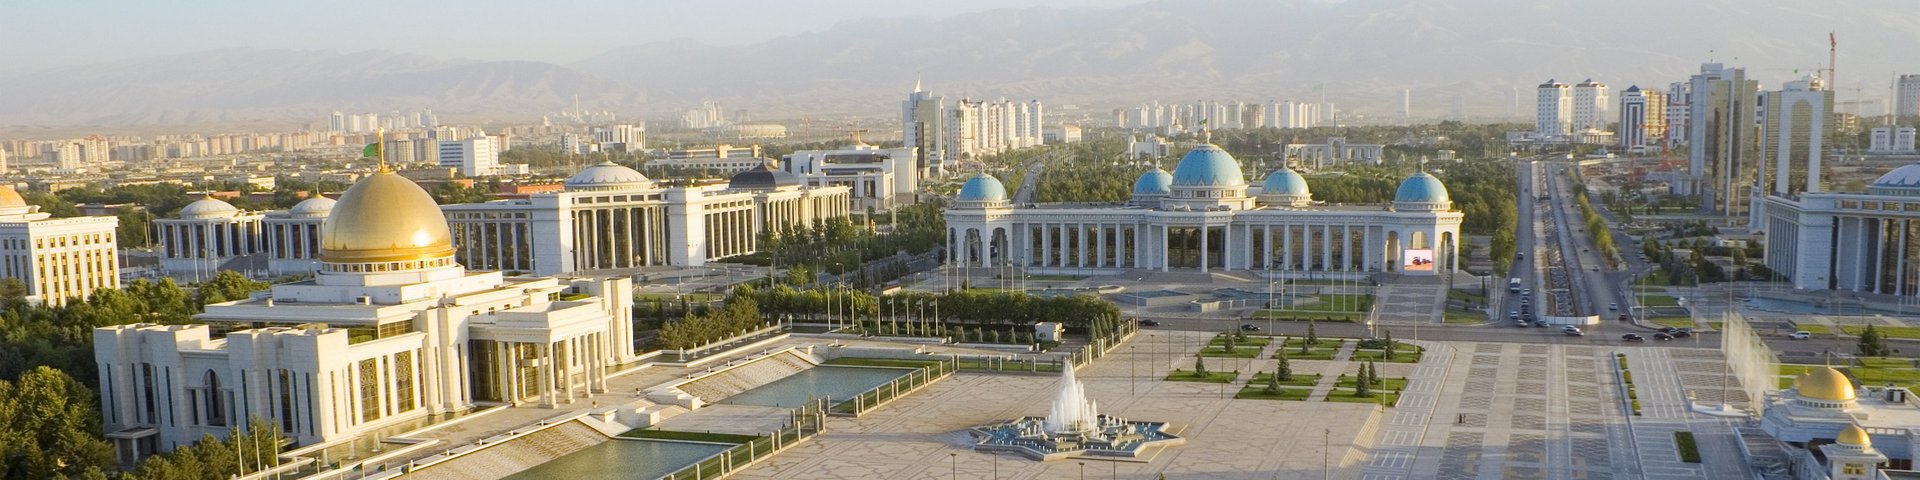 Blick auf den grossen Hauptplatz von Aschgabat in Turkmenistan